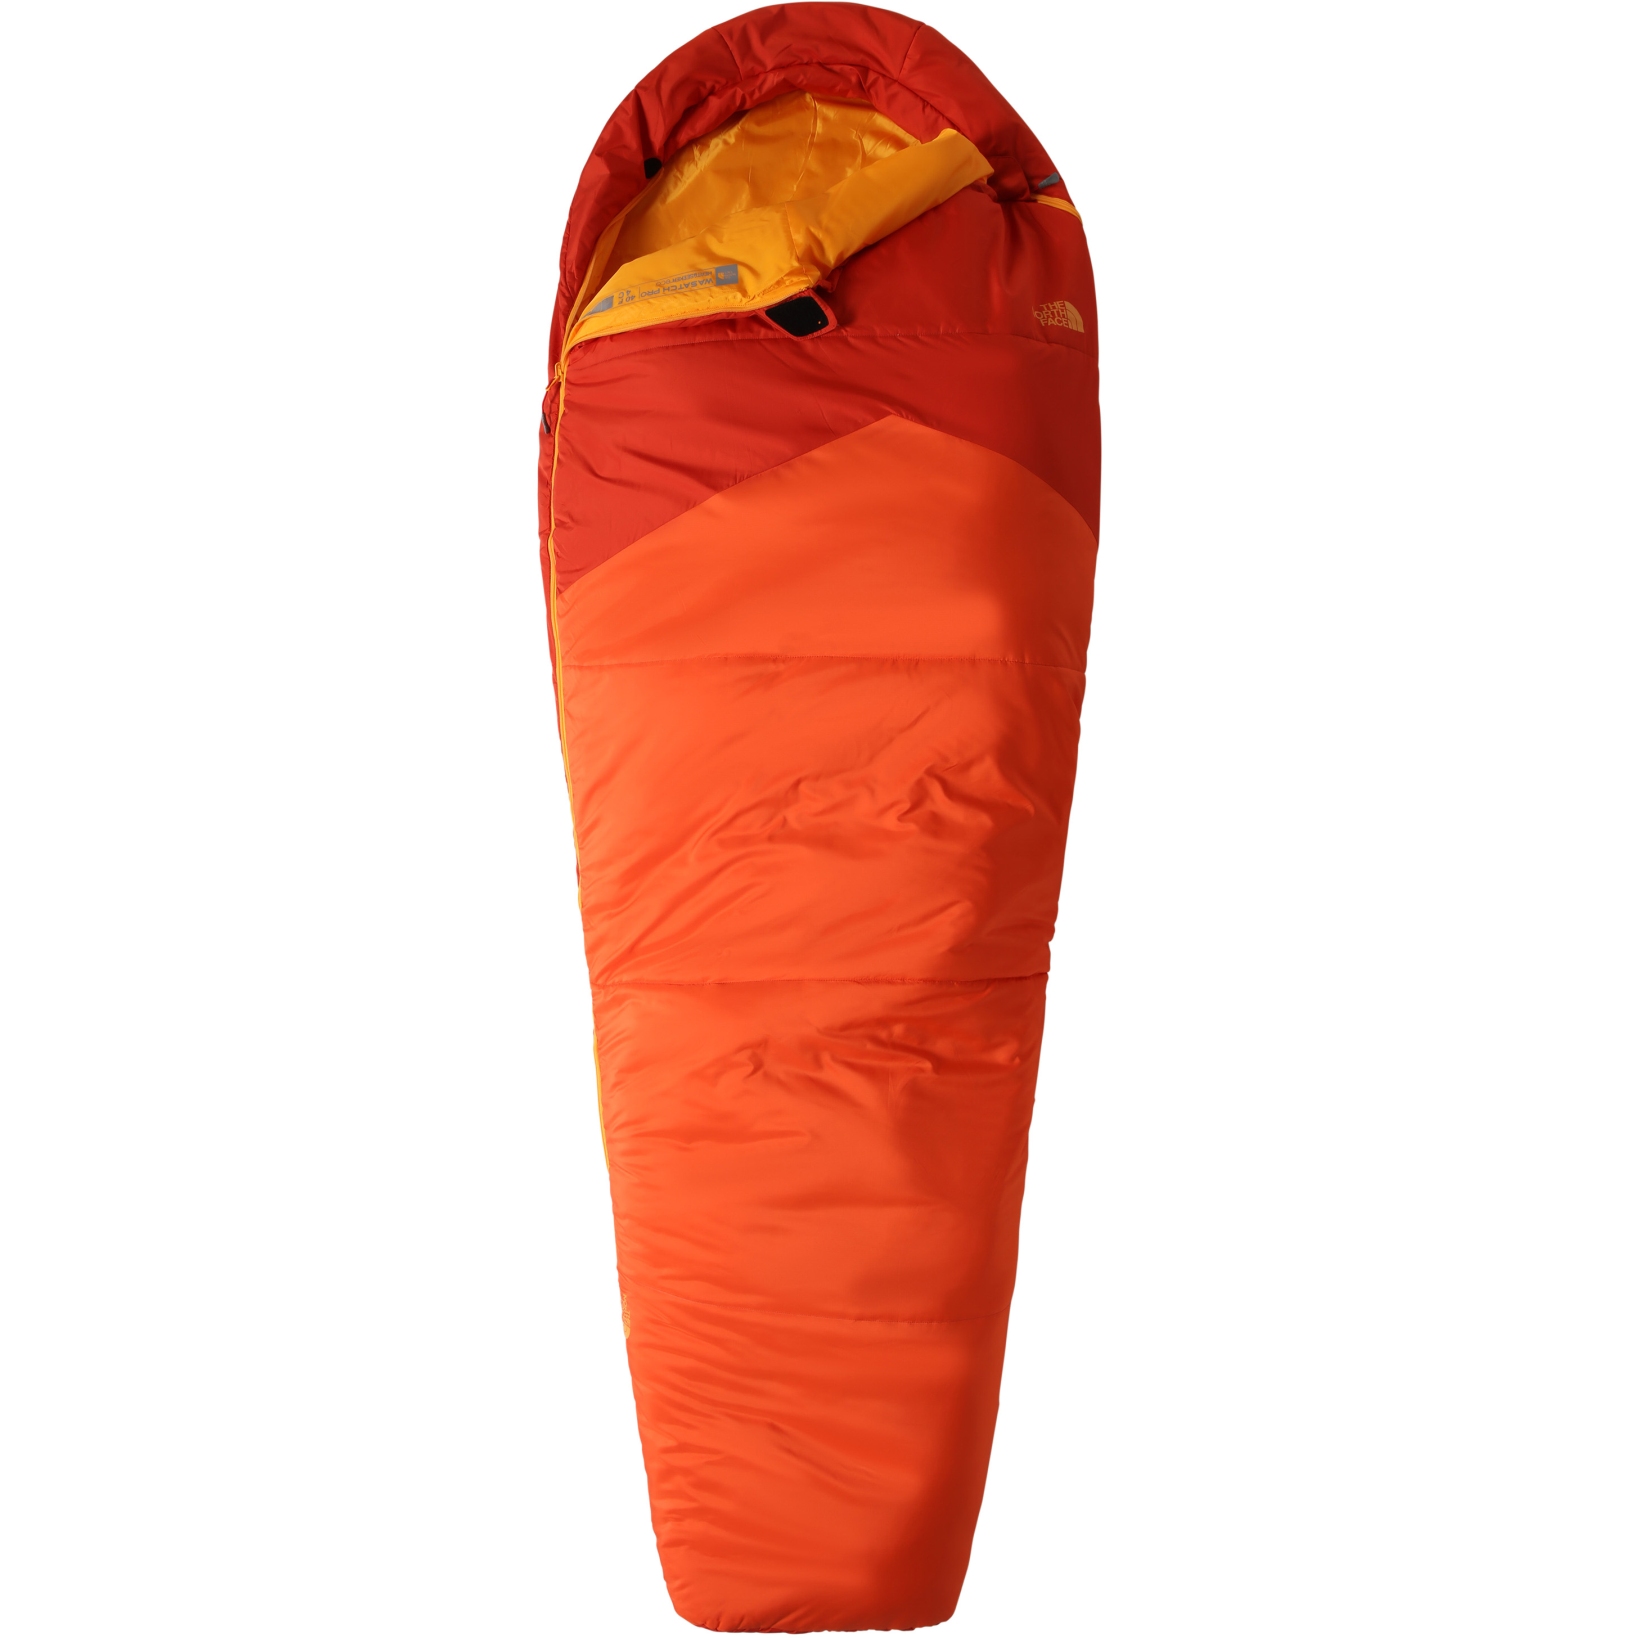 Produktbild von The North Face Wasatch Pro 4°C Schlafsack - Regular - Reißverschluss rechts - Zion Orange/Persian Orange